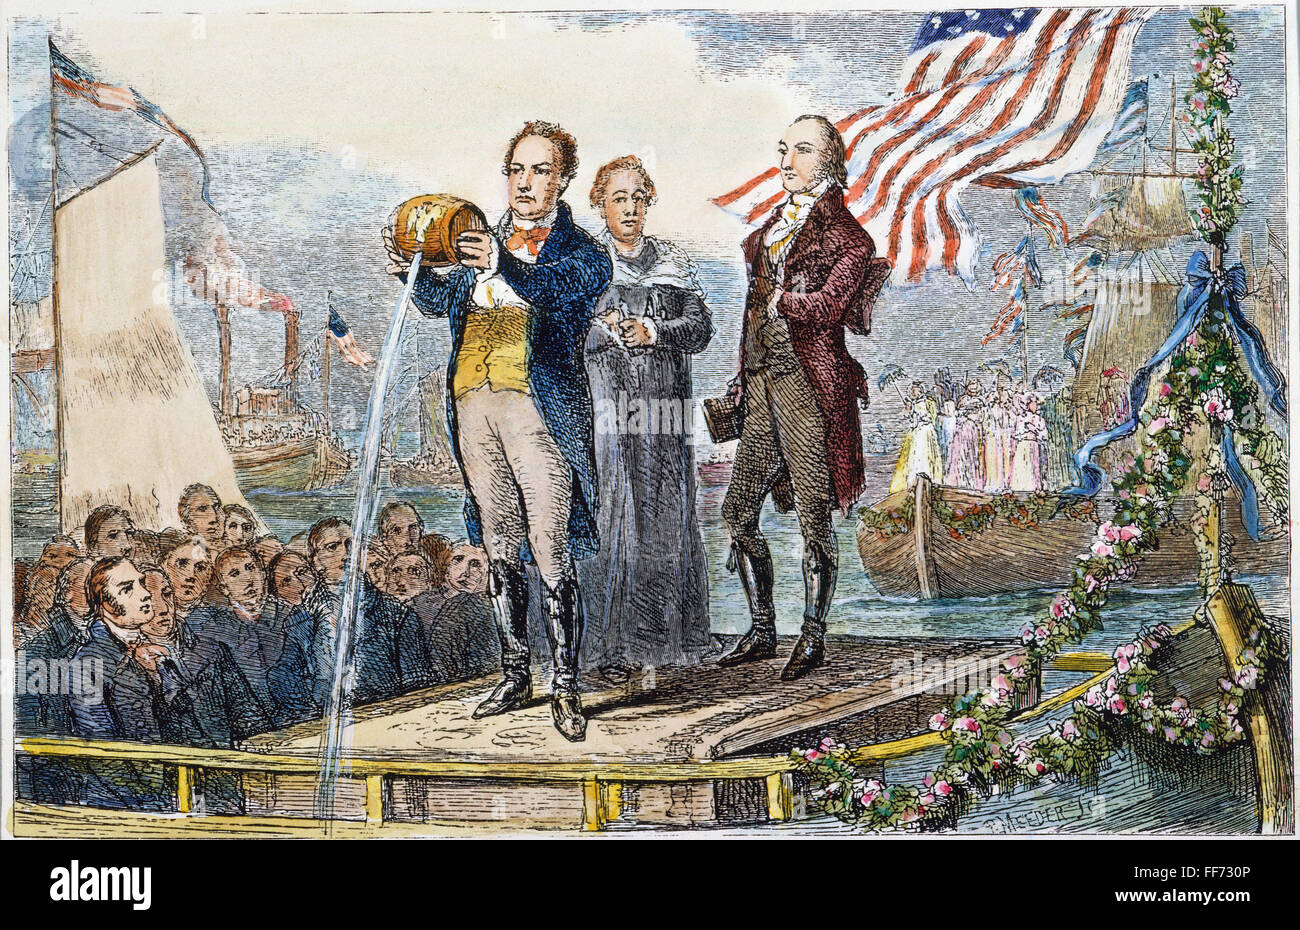 ERIE-KANAL ÖFFNEN, 1825. /nNew Yorker Gouverneur DeWitt Clinton strömendem Wasser vom Eriesee in den Atlantischen Ozean auf die große Feier der Erie-Kanal im Hafen von New York, 4. November 1825. Holzstich, 19. Jahrhundert. Stockfoto